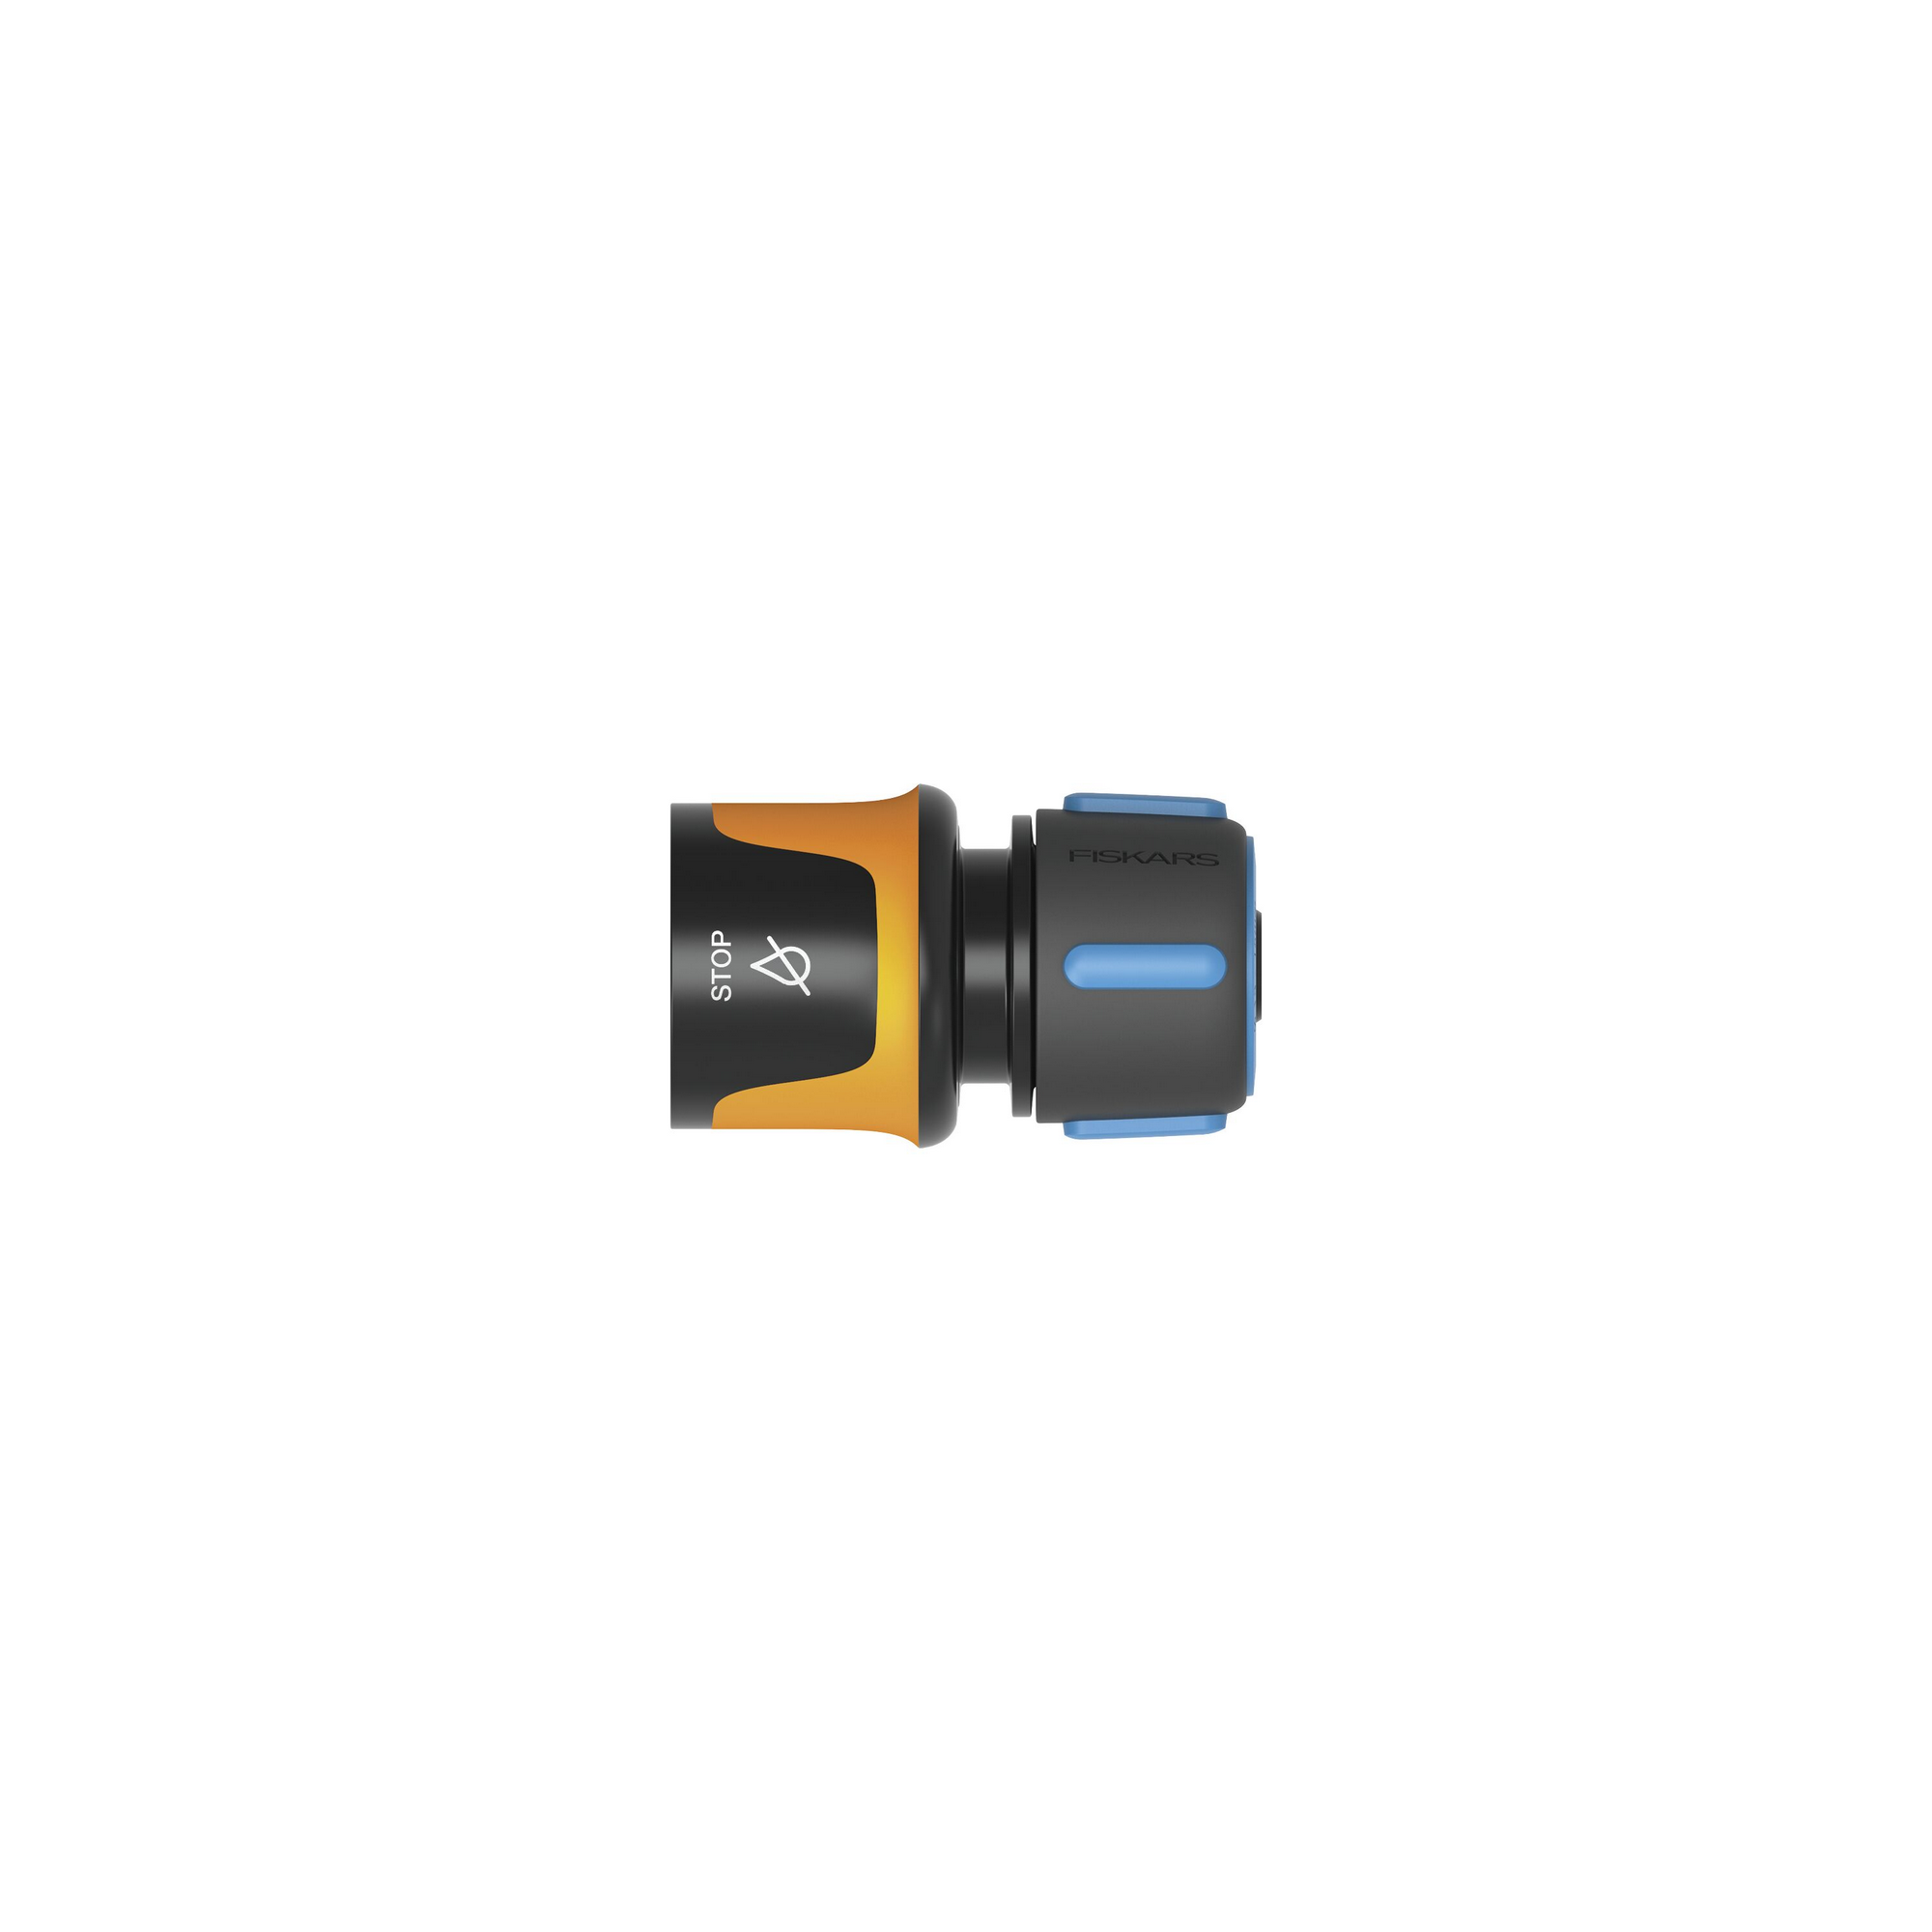 Schlauchanschluss mit Wasserstop, 13-15 mm (1/2-5/8"), Ø 38 mm + product picture